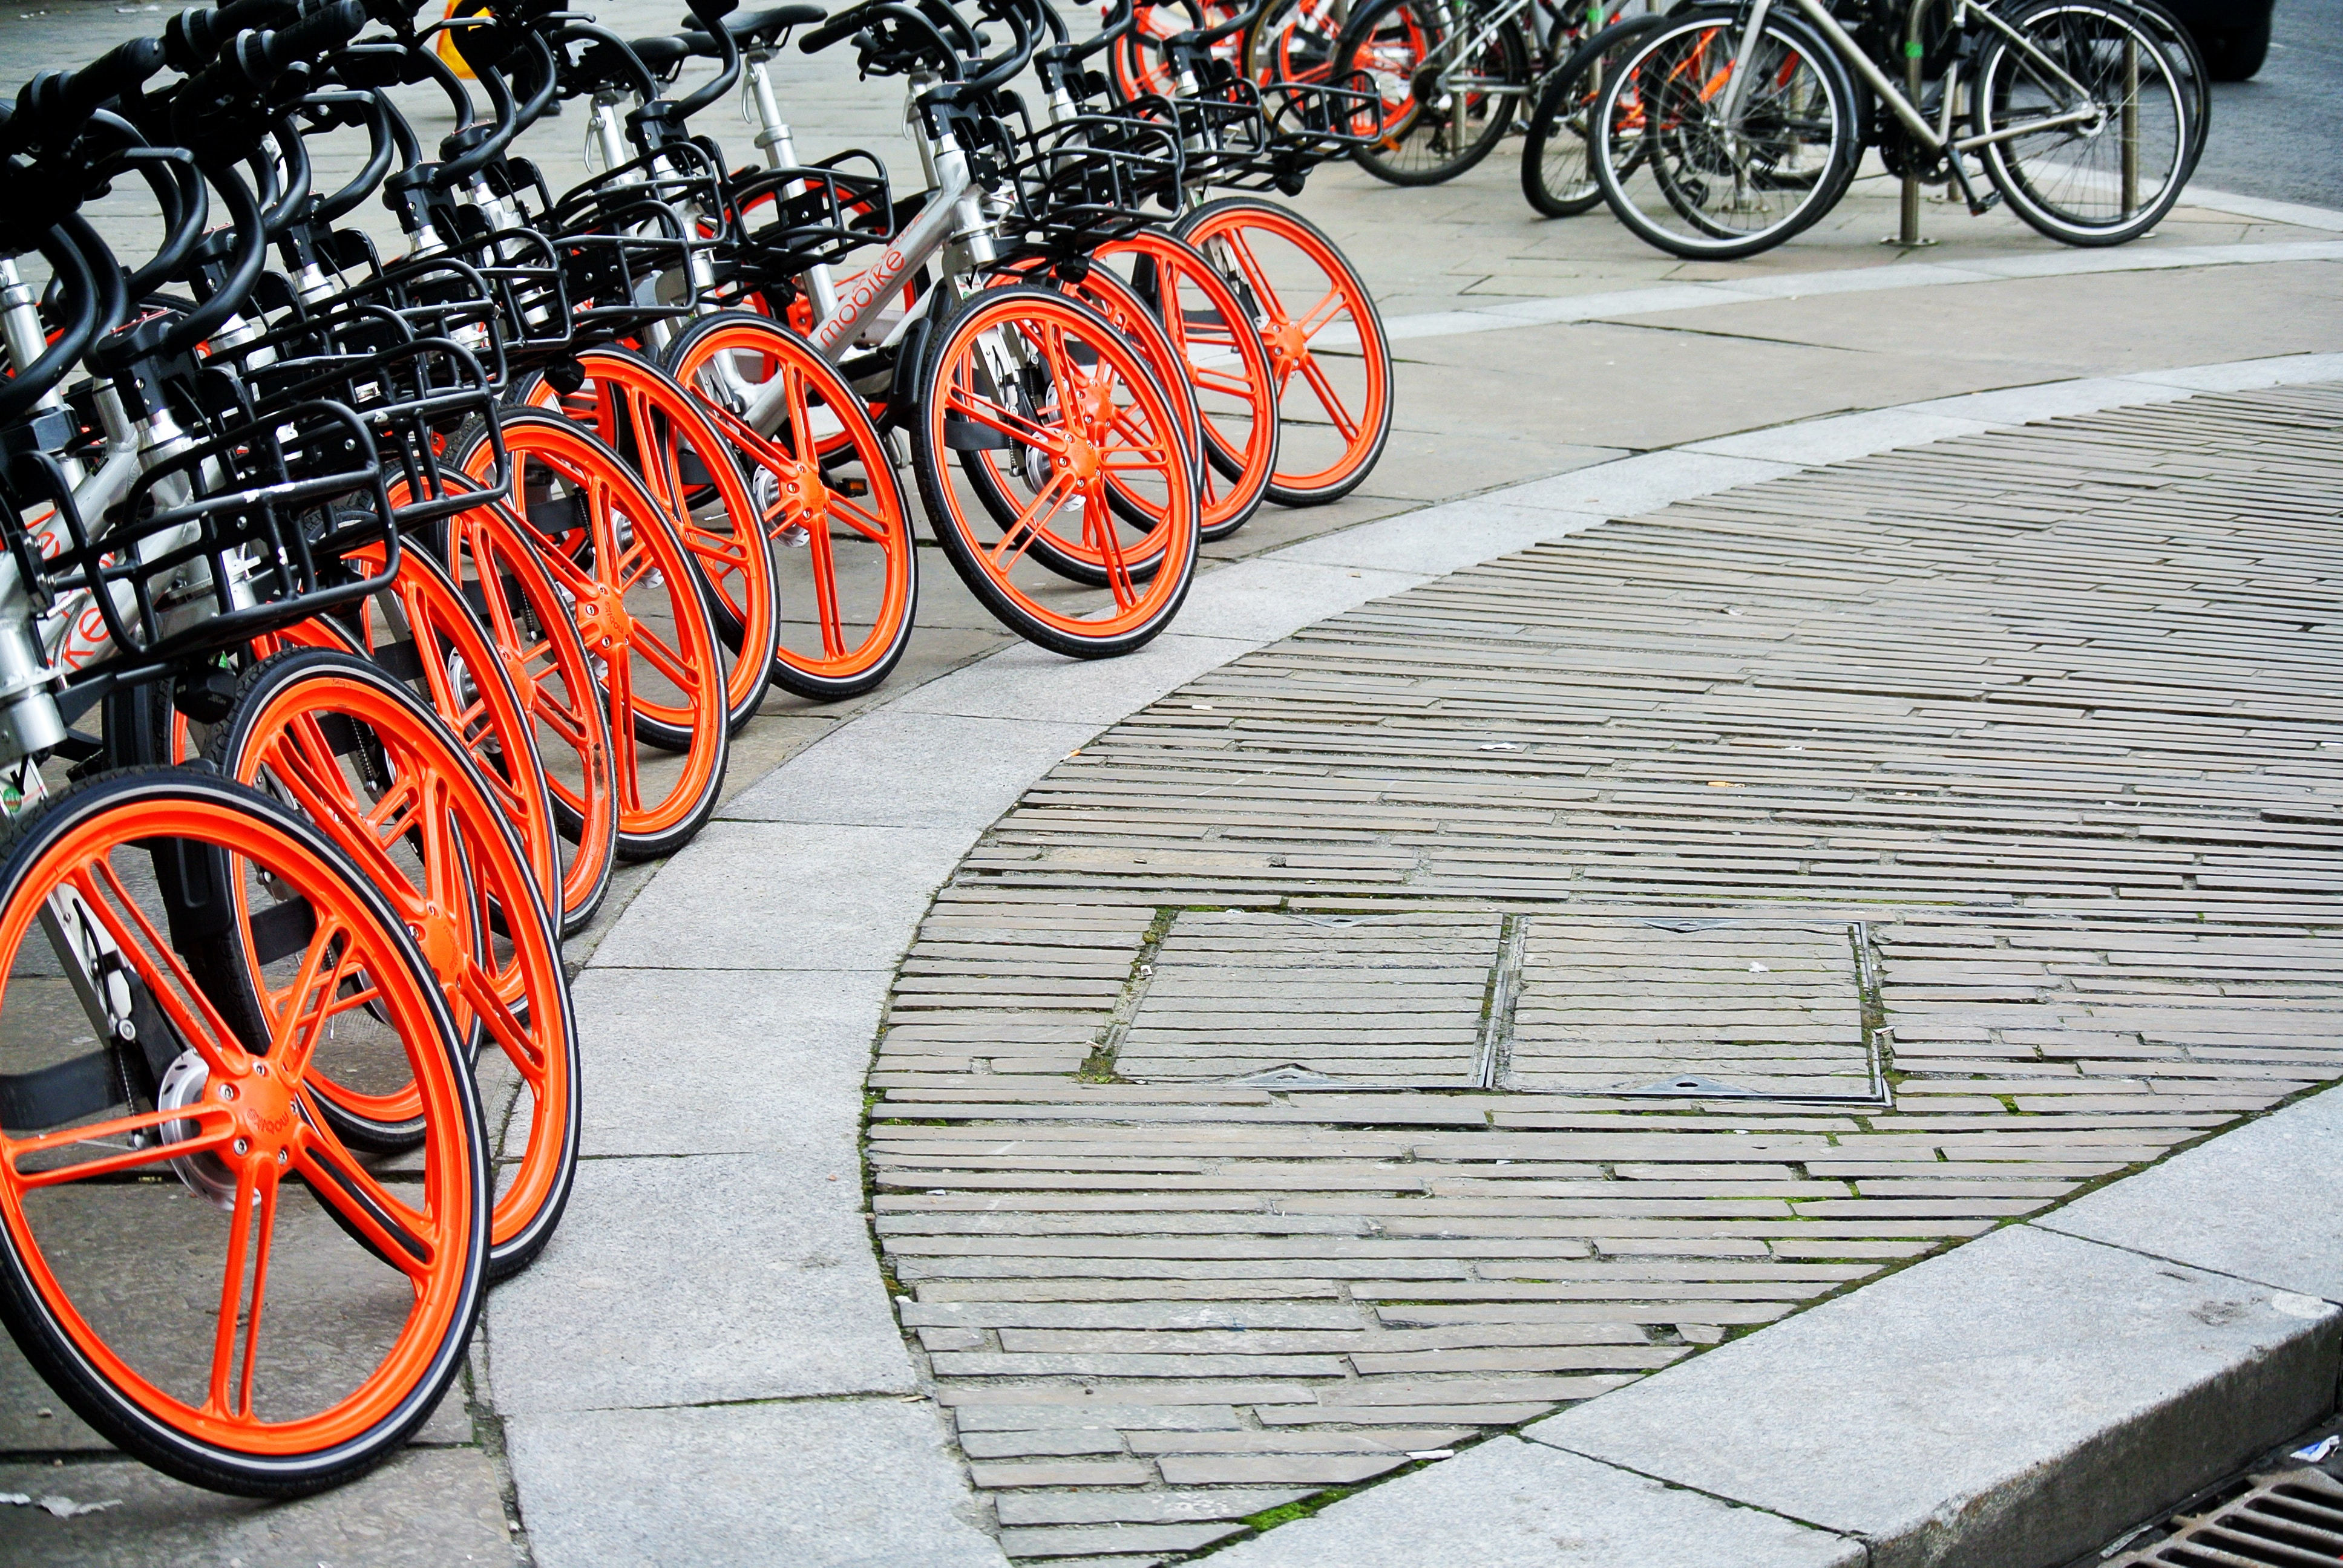 Seis aplicaciones los amantes de bicicletas: rutas, reparación salud - Infobae